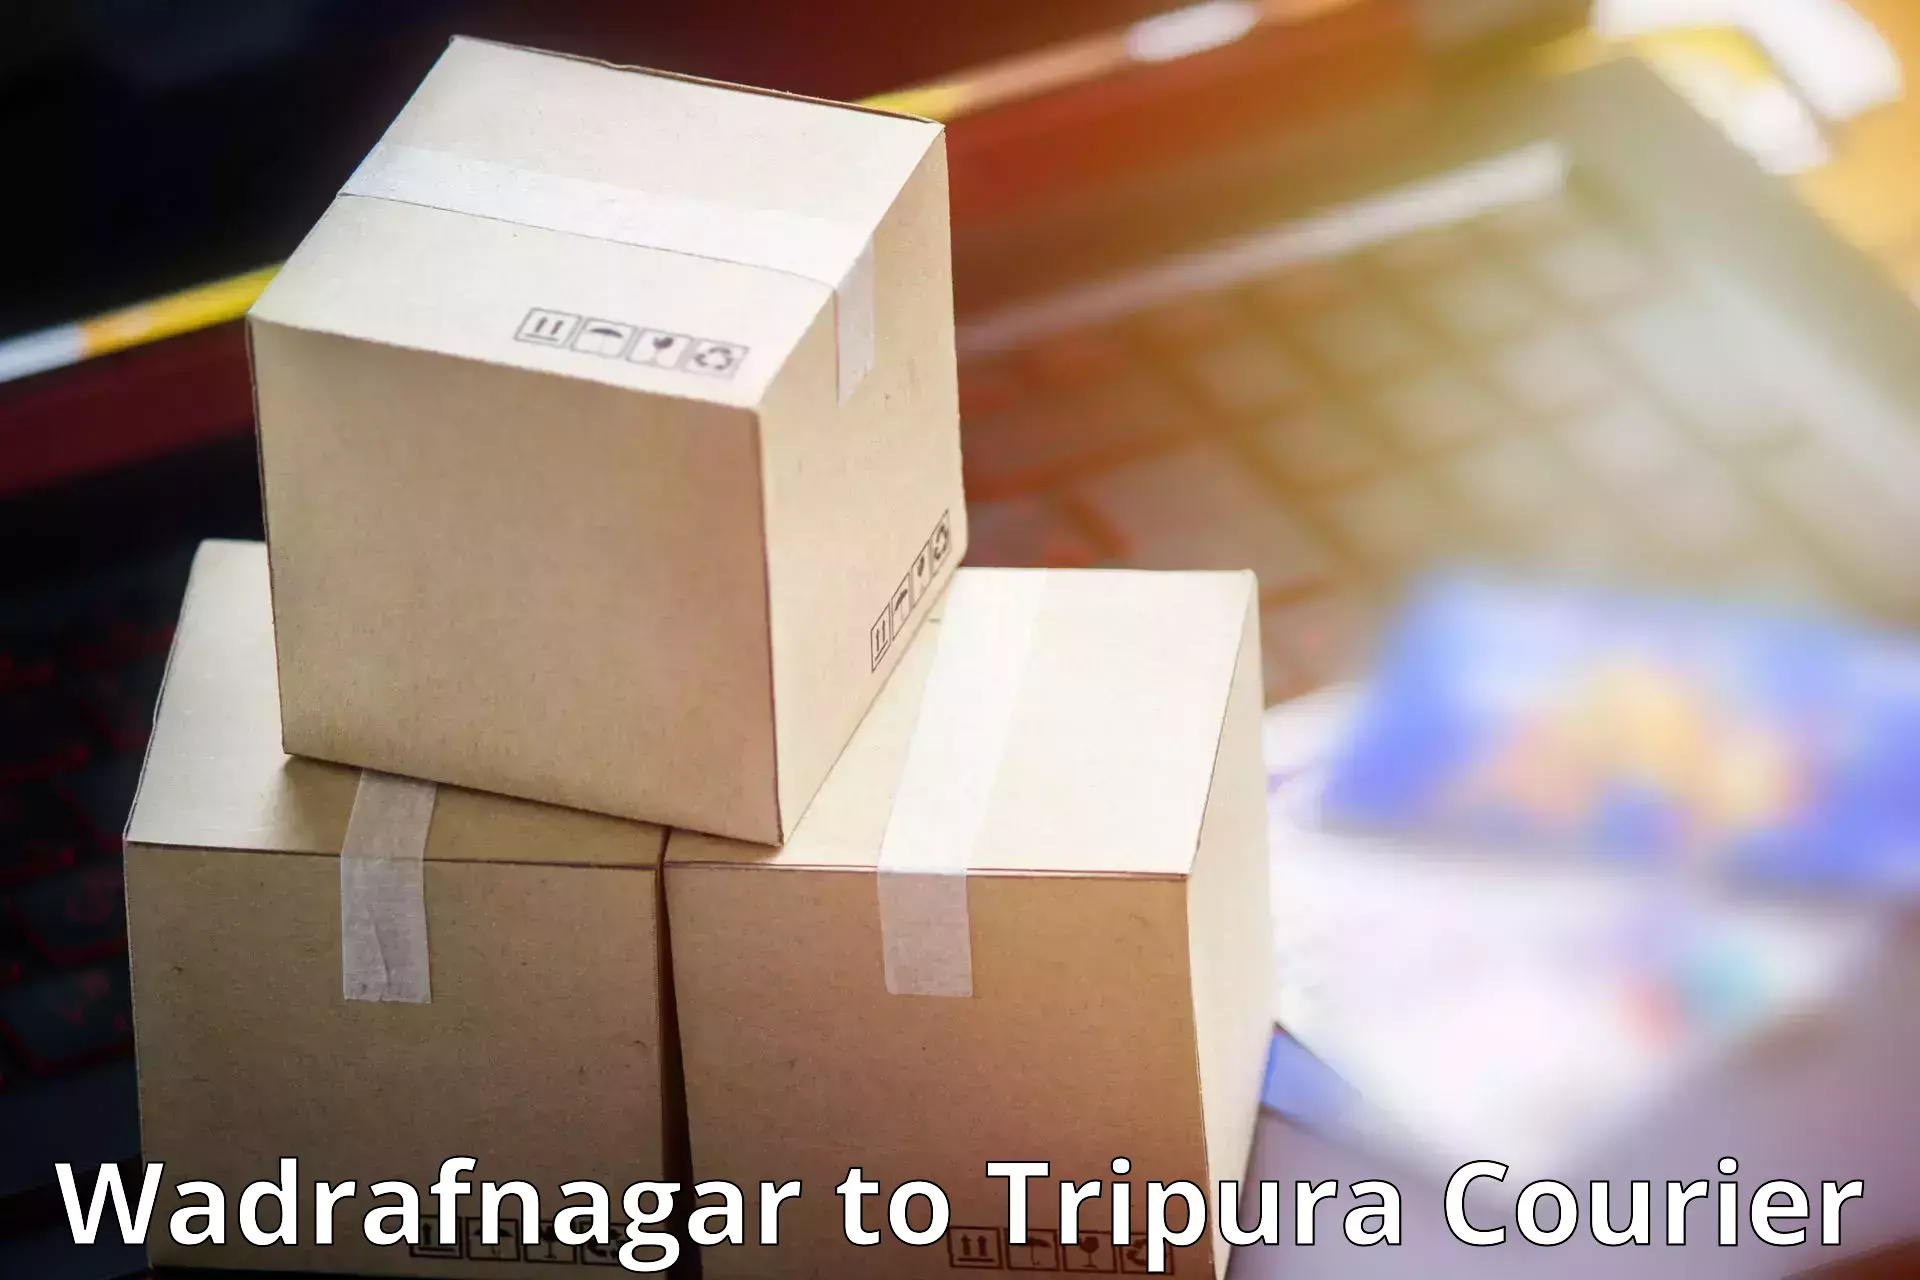 Innovative courier solutions in Wadrafnagar to Tripura